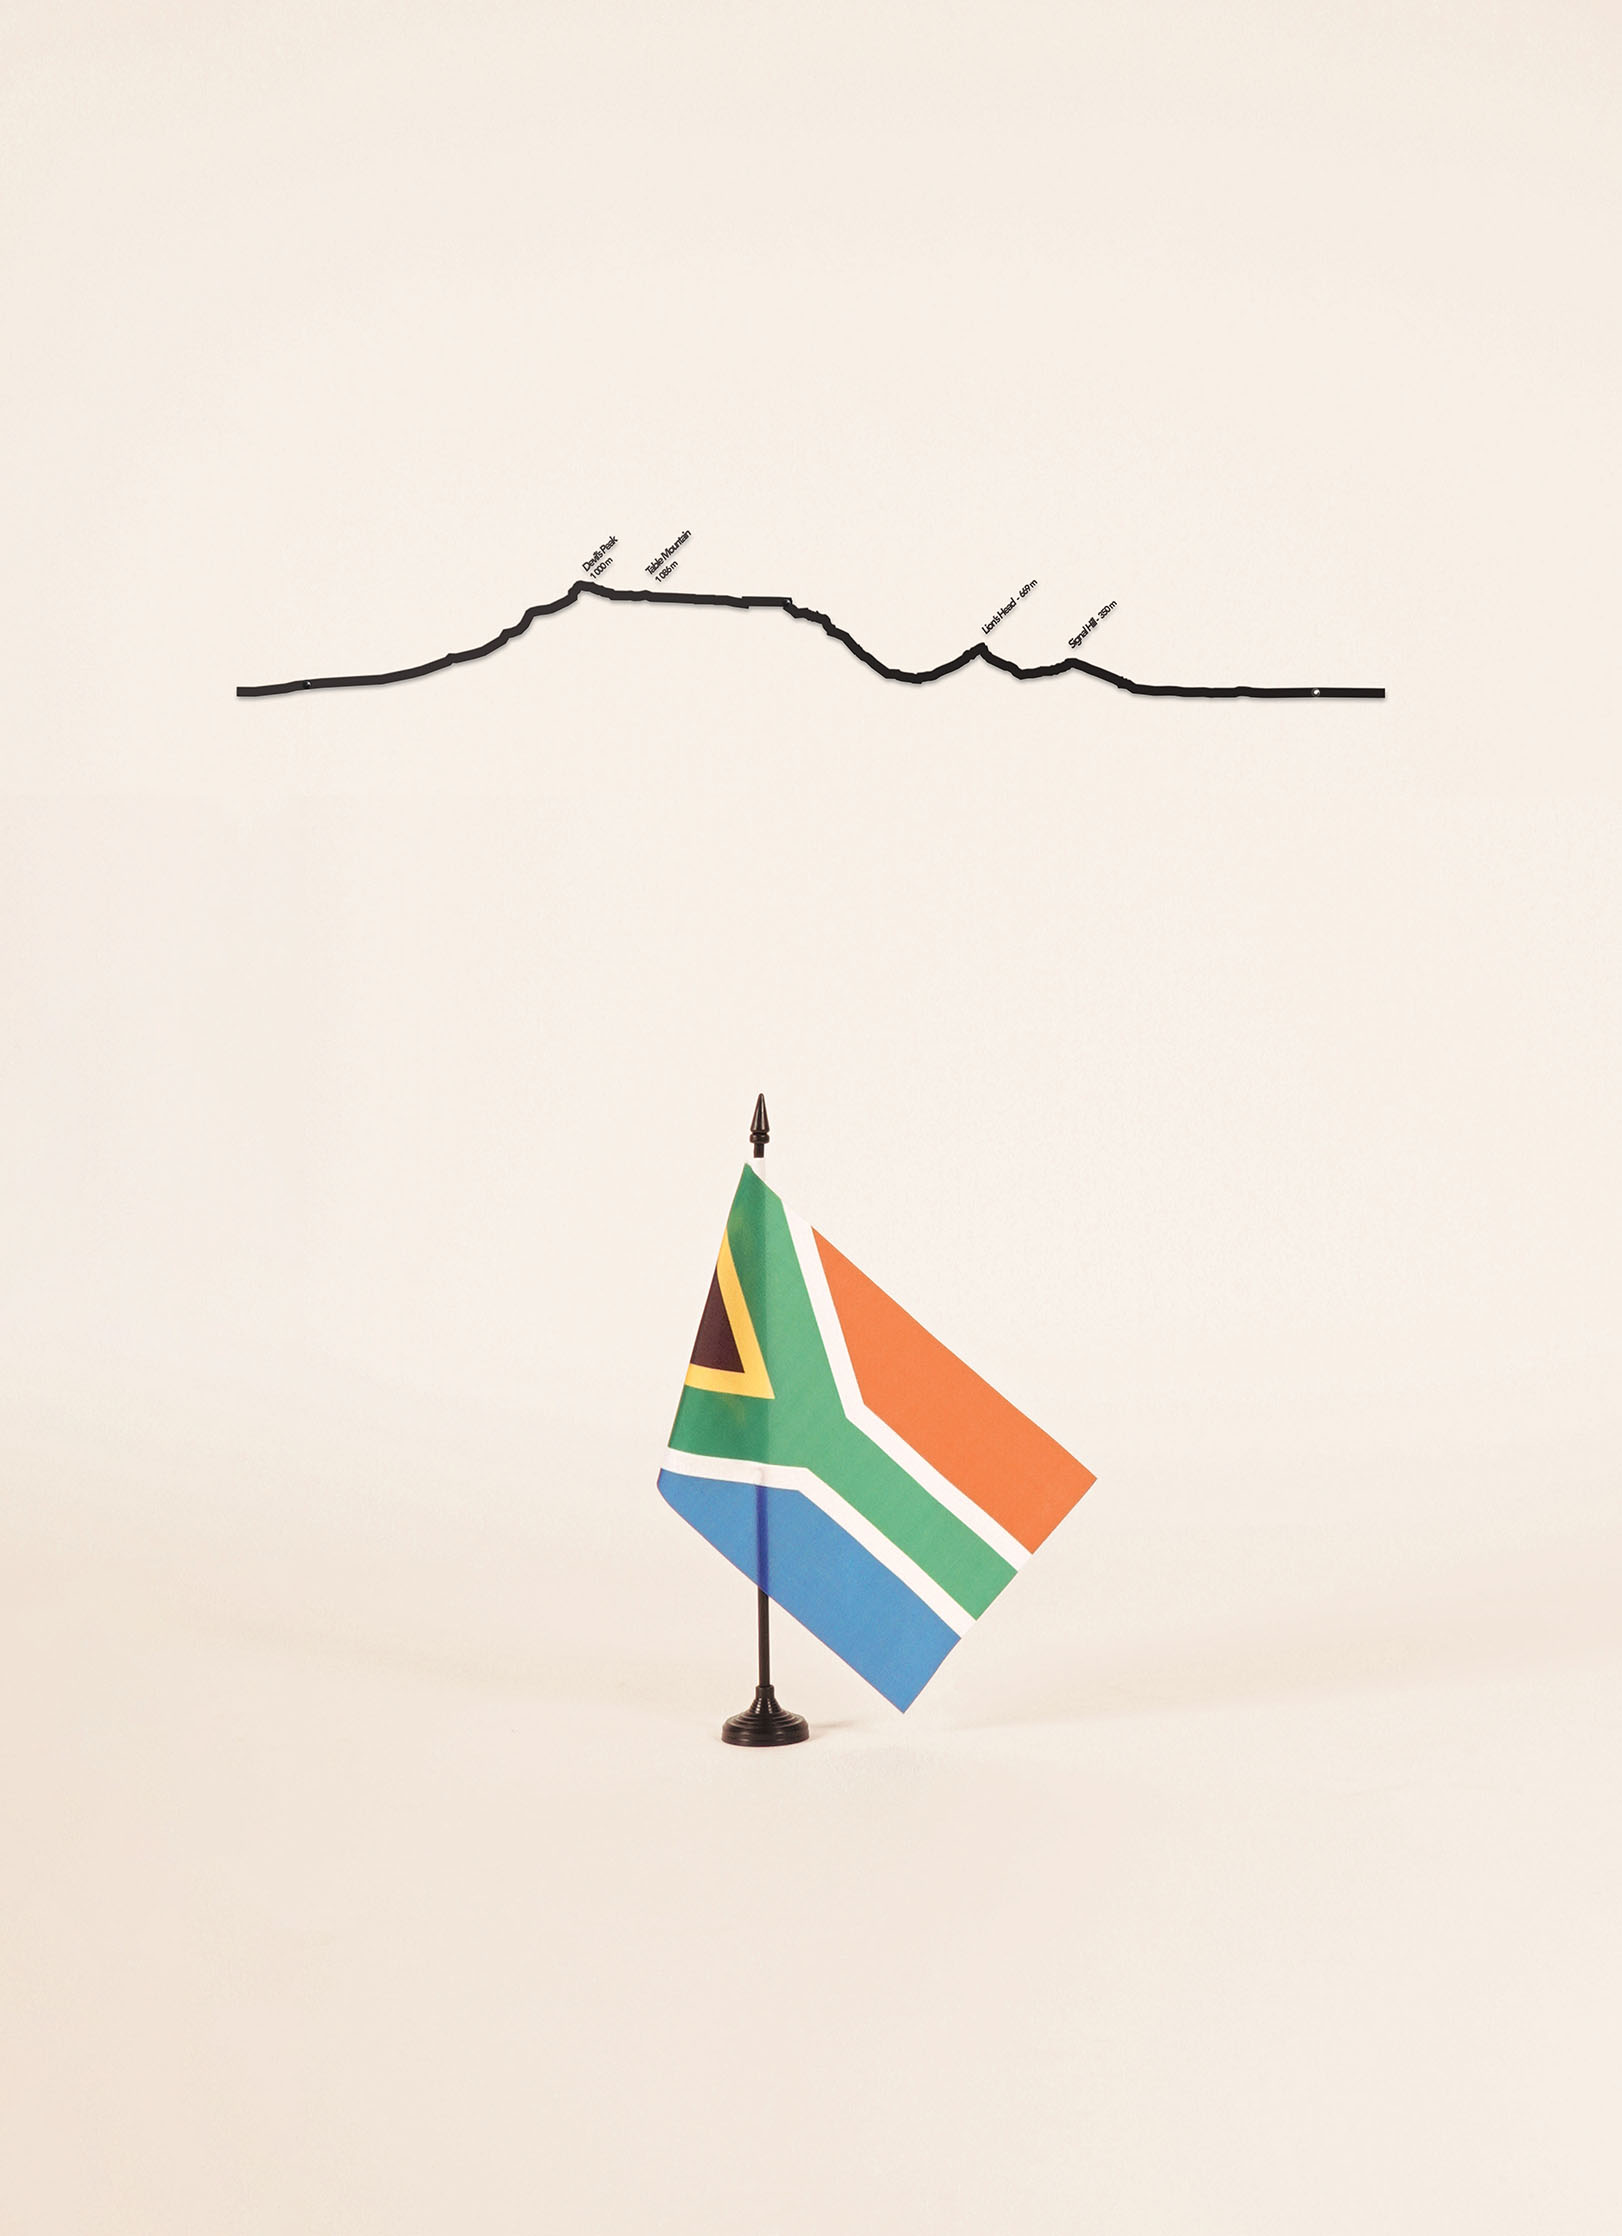 Cliche skyline de Table Mountain